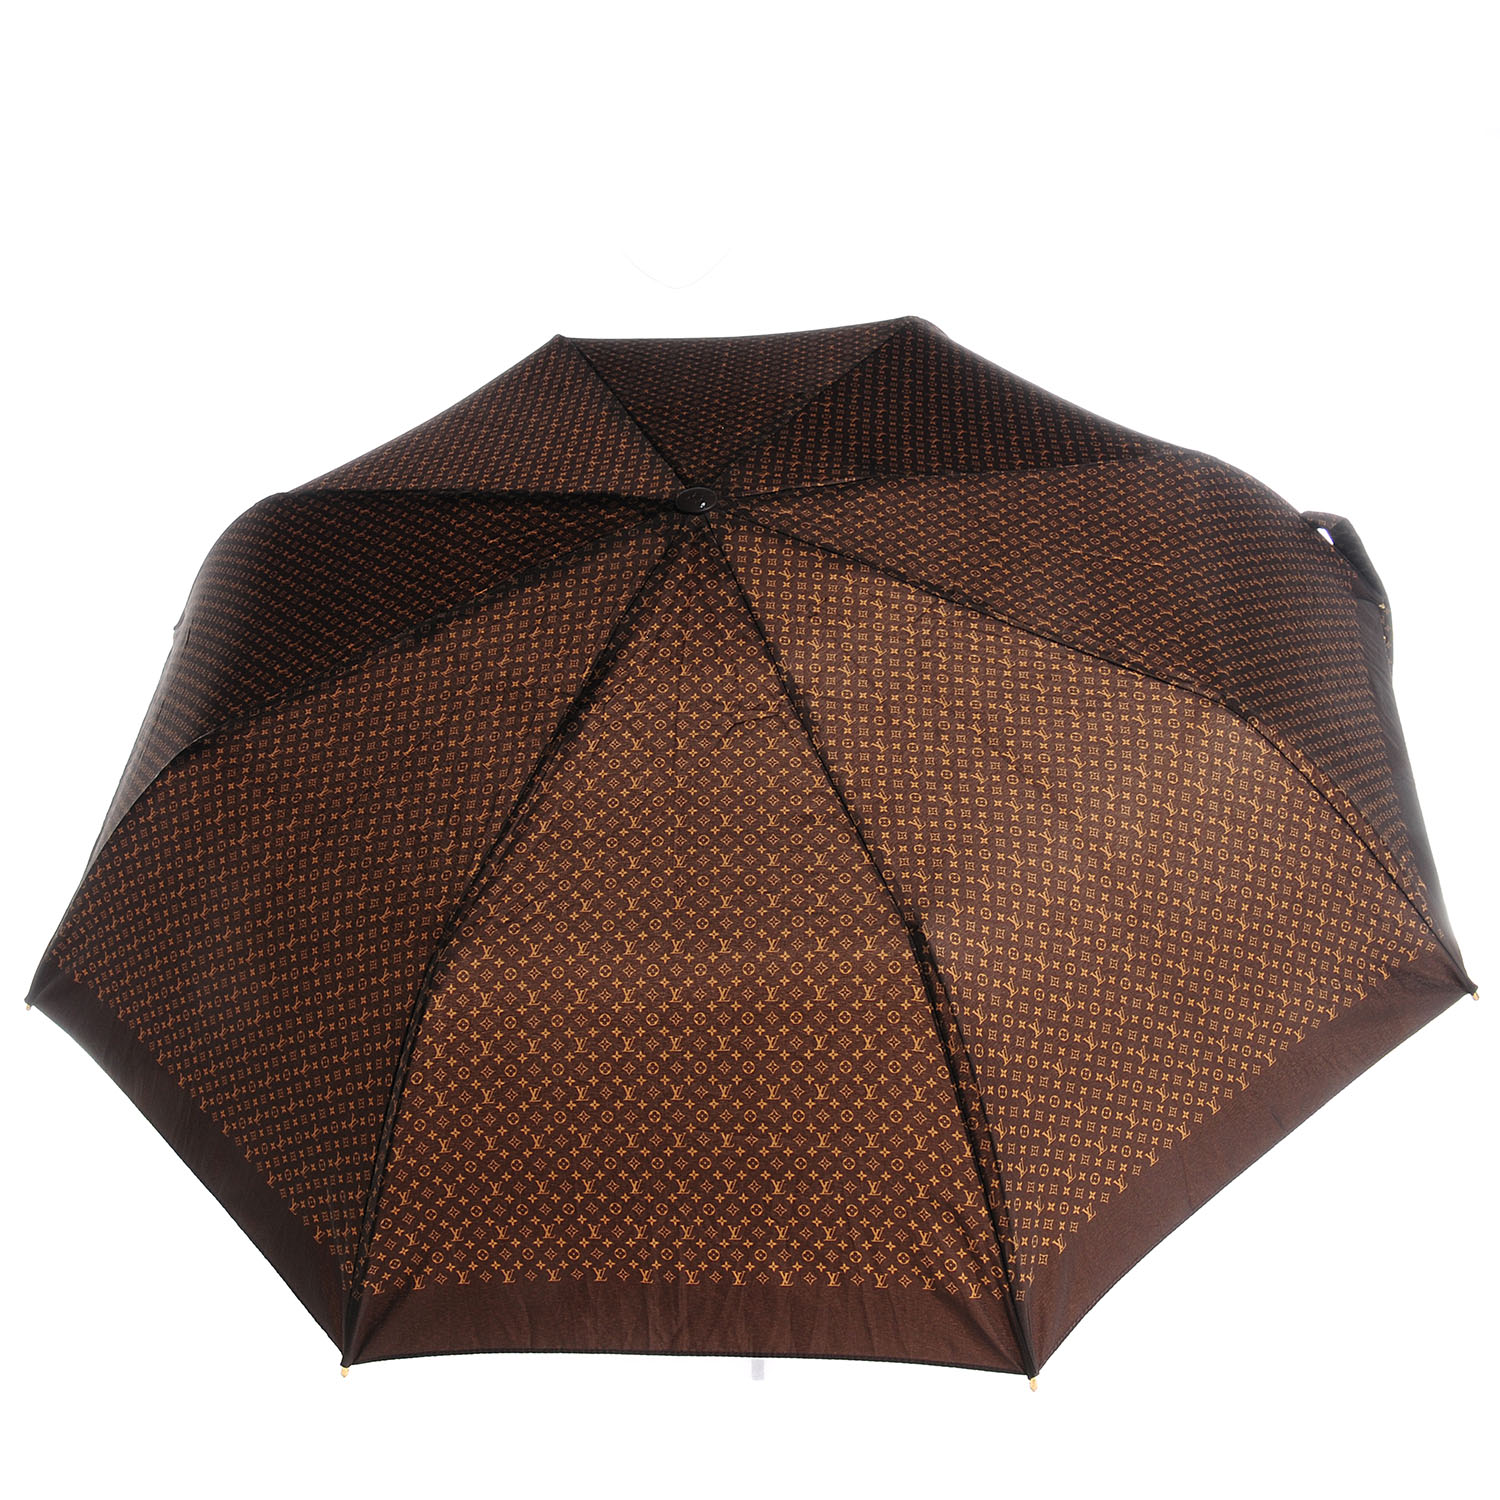 LOUIS VUITTON Monogram Ondees Compact Umbrella Marron 81343